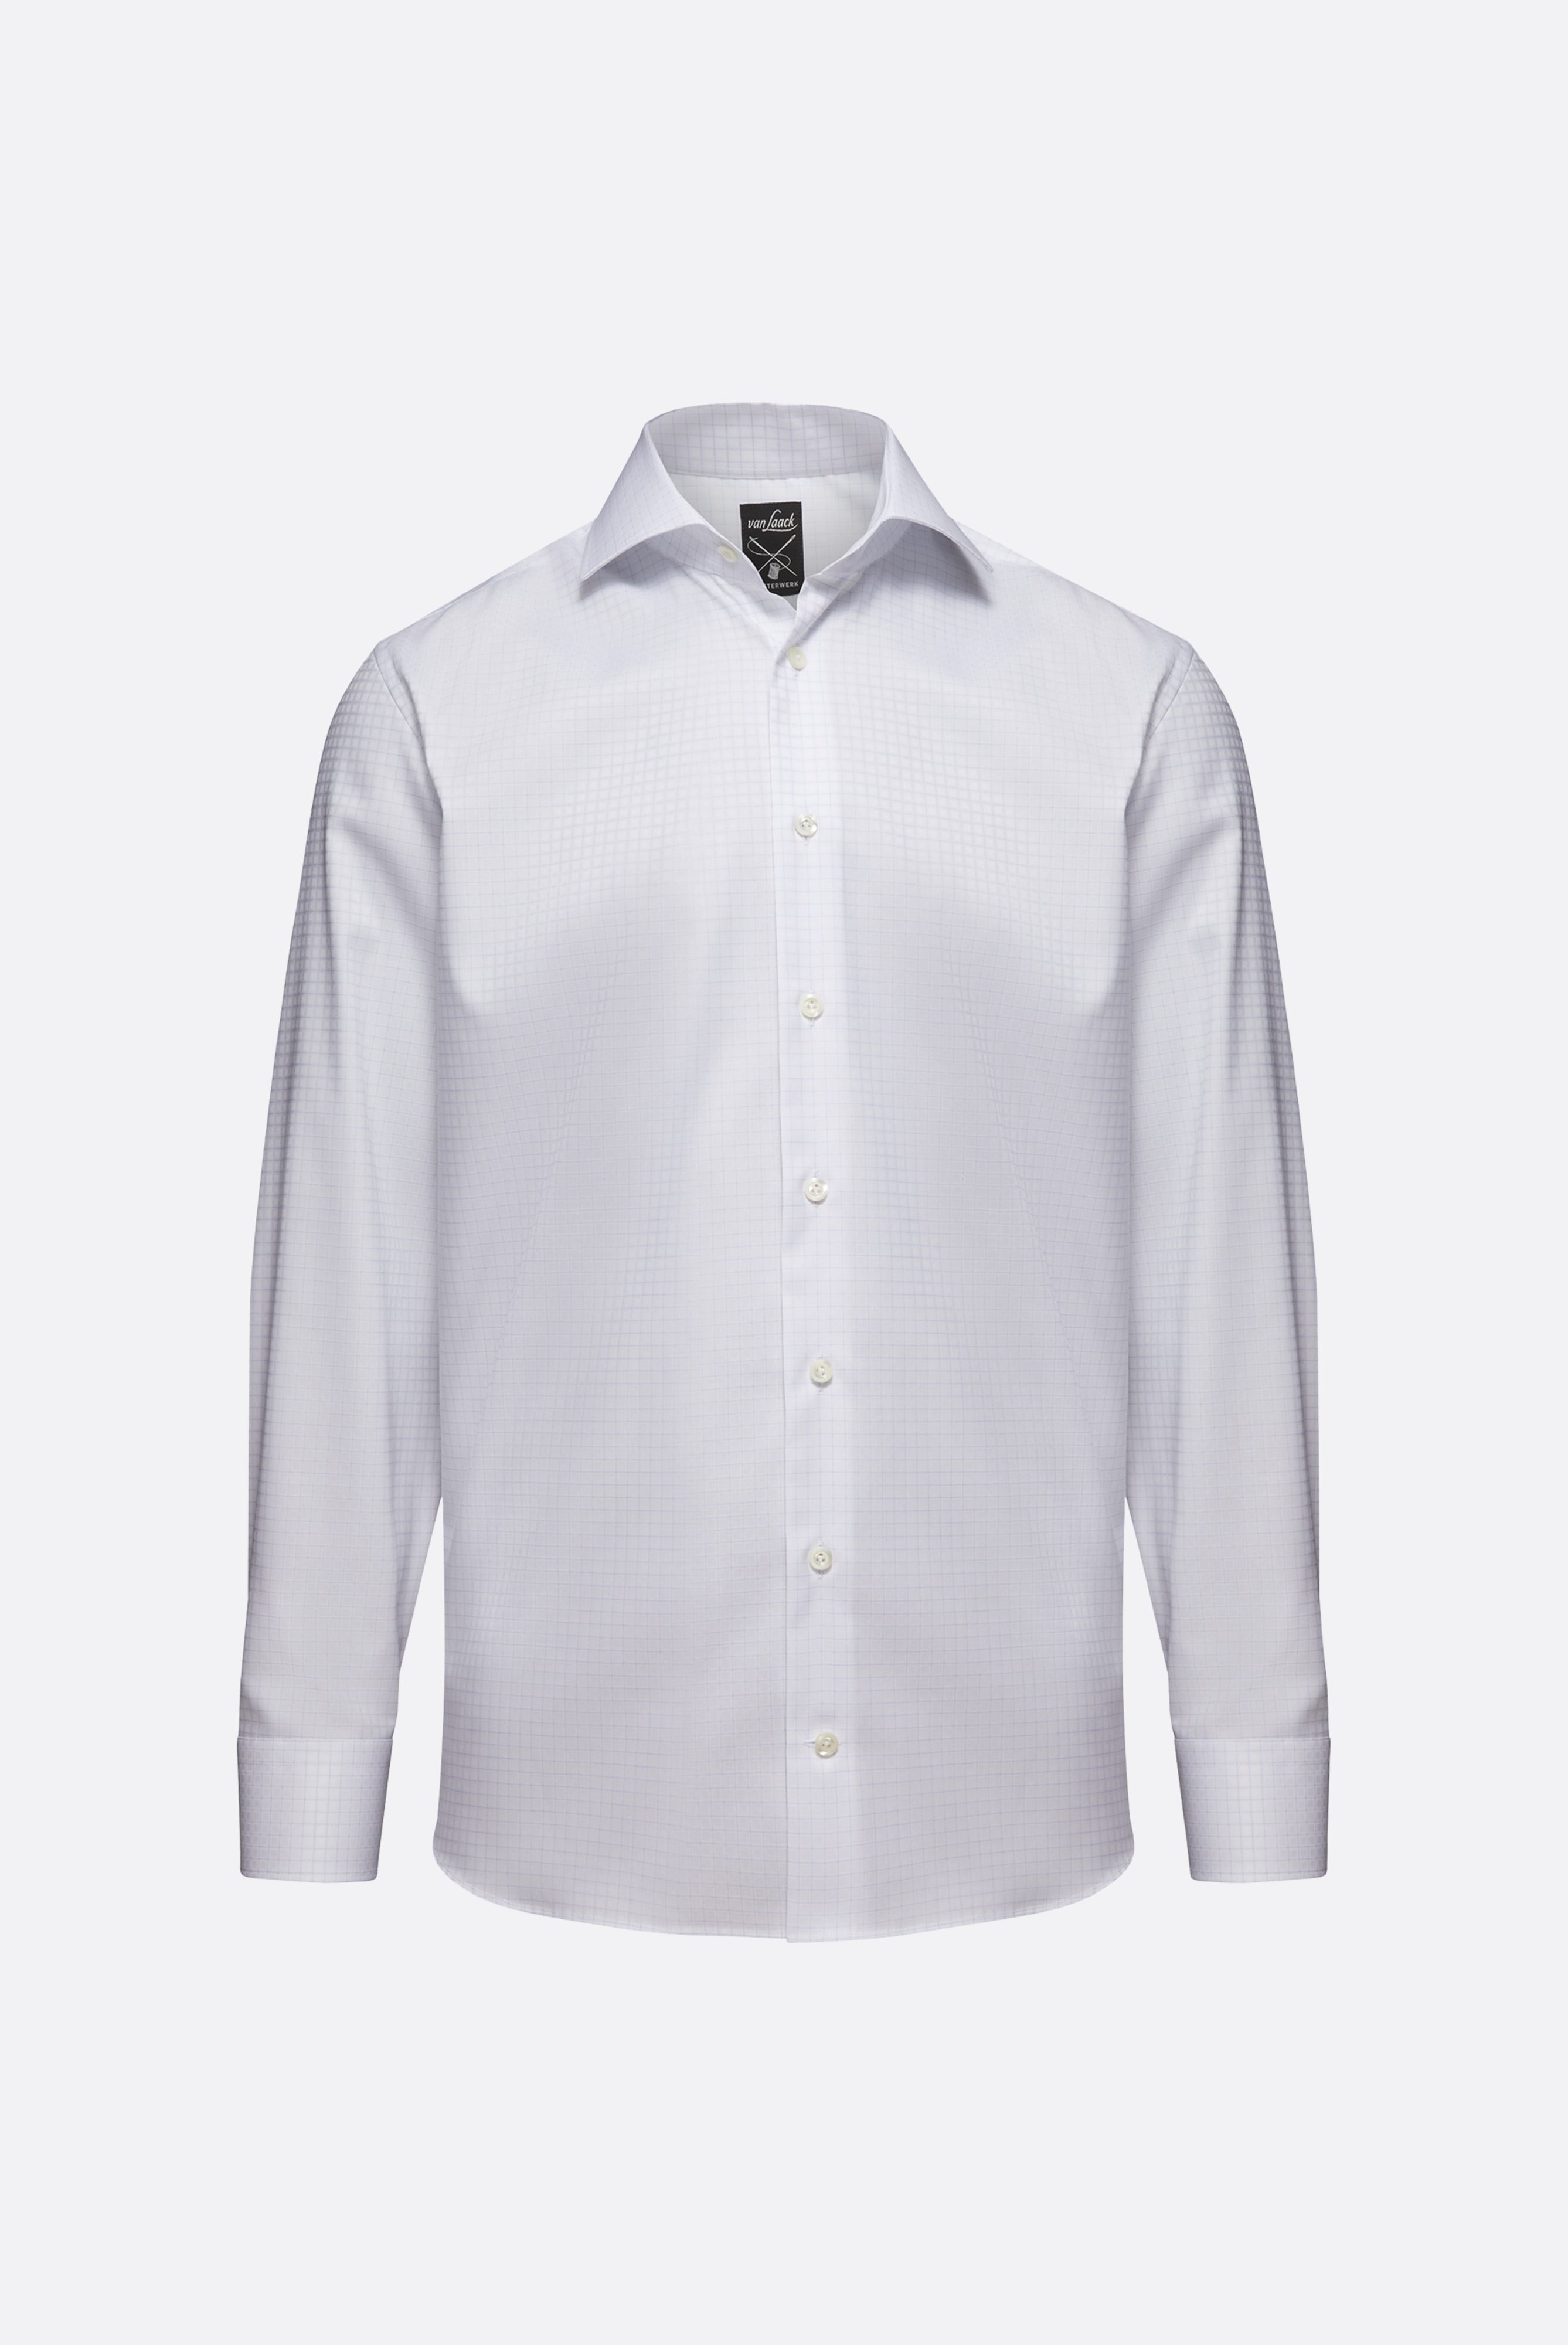 Bügelleichte Hemden+Bügelfreies Kariertes Twill-Hemd Tailor Fit+20.2020.BQ.161105.007.38